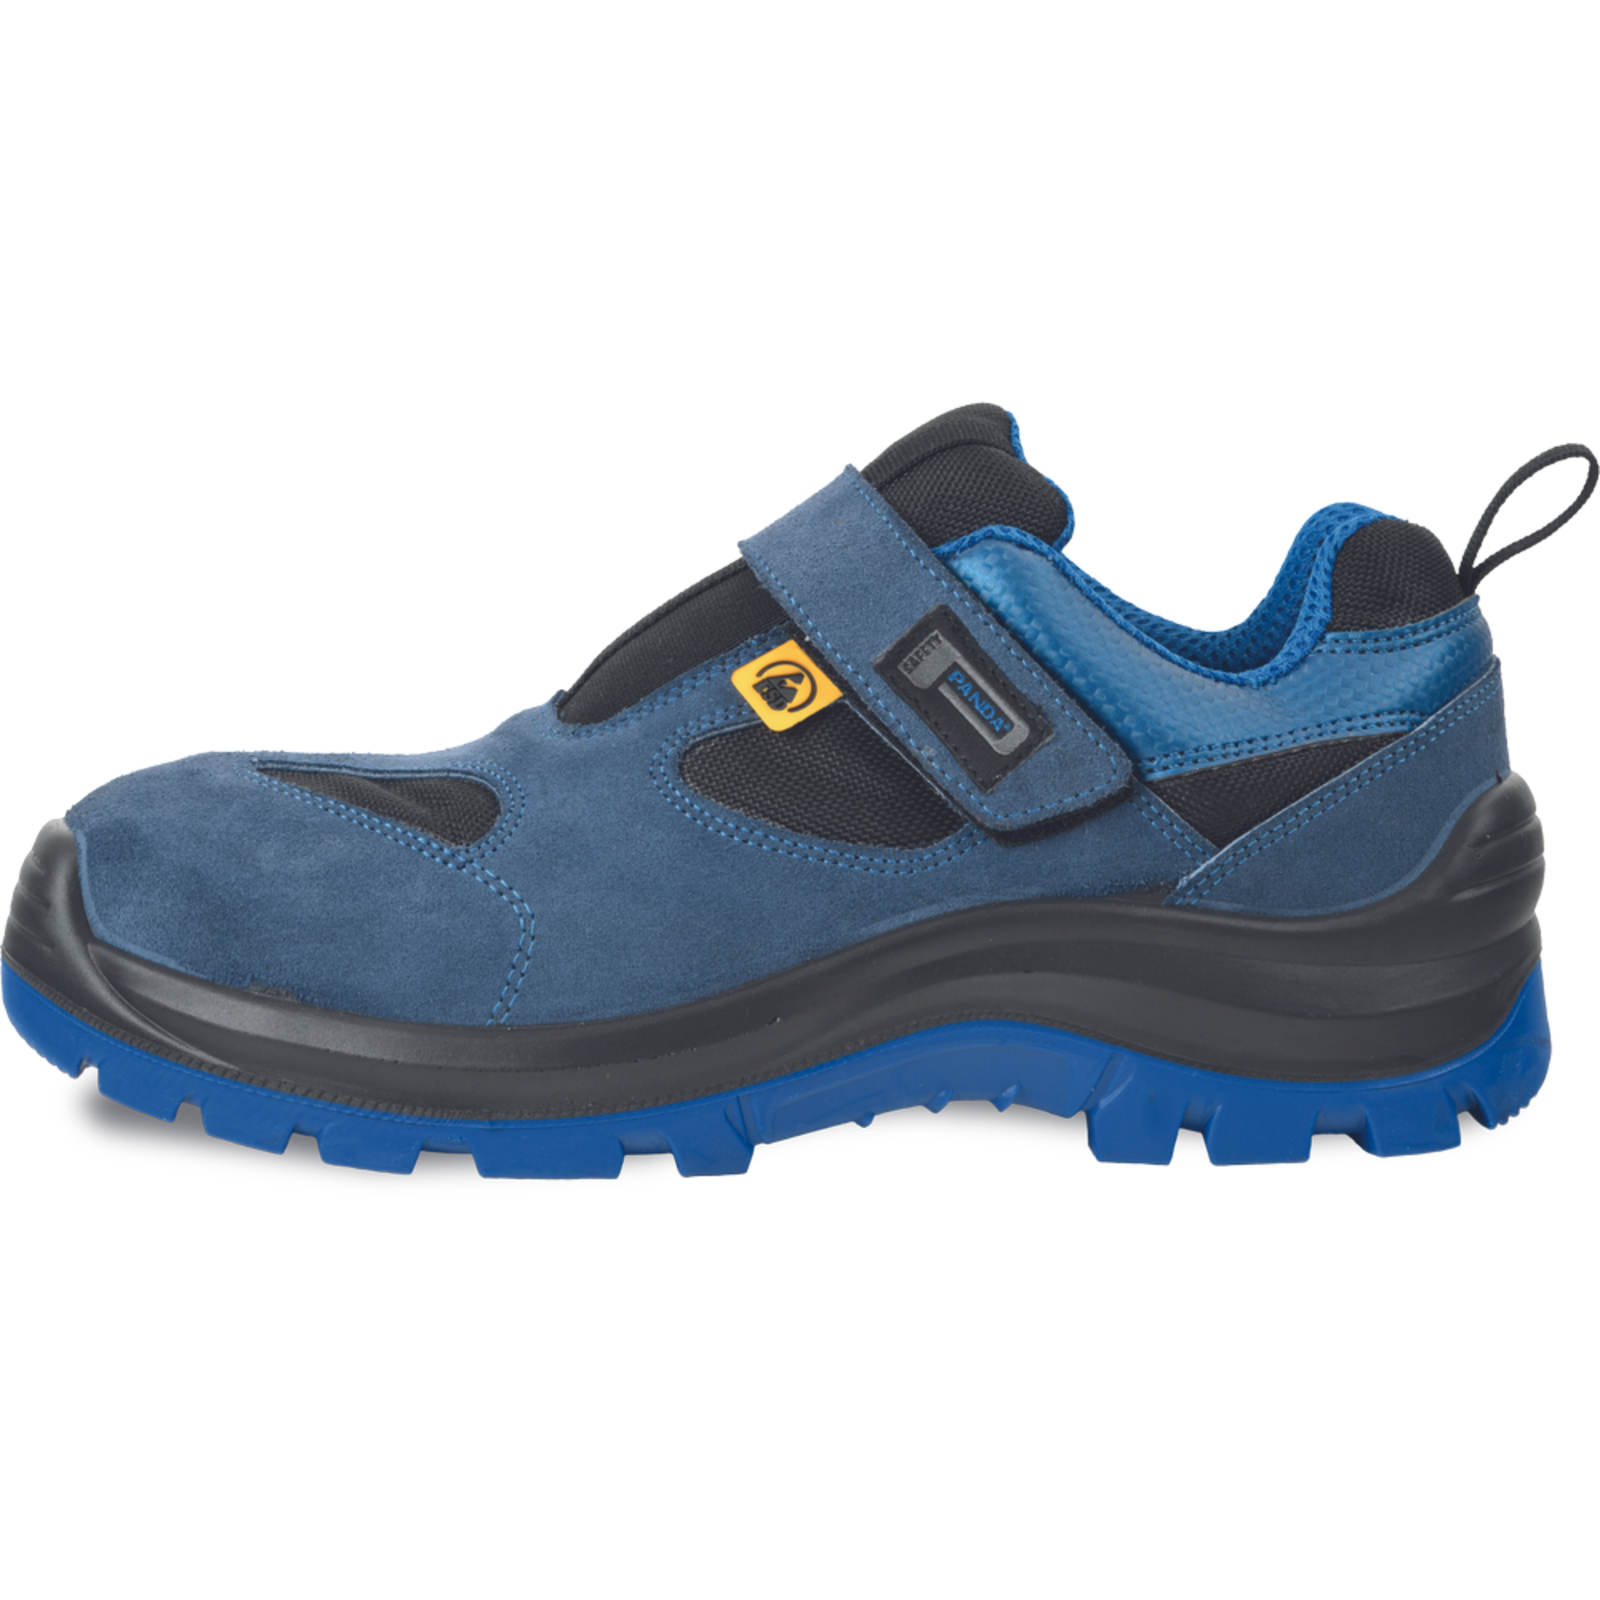 Bezpečnostné pracovné sandále Panda Wilk MF ESD S1P SRC - veľkosť: 43, farba: modrá/čierna